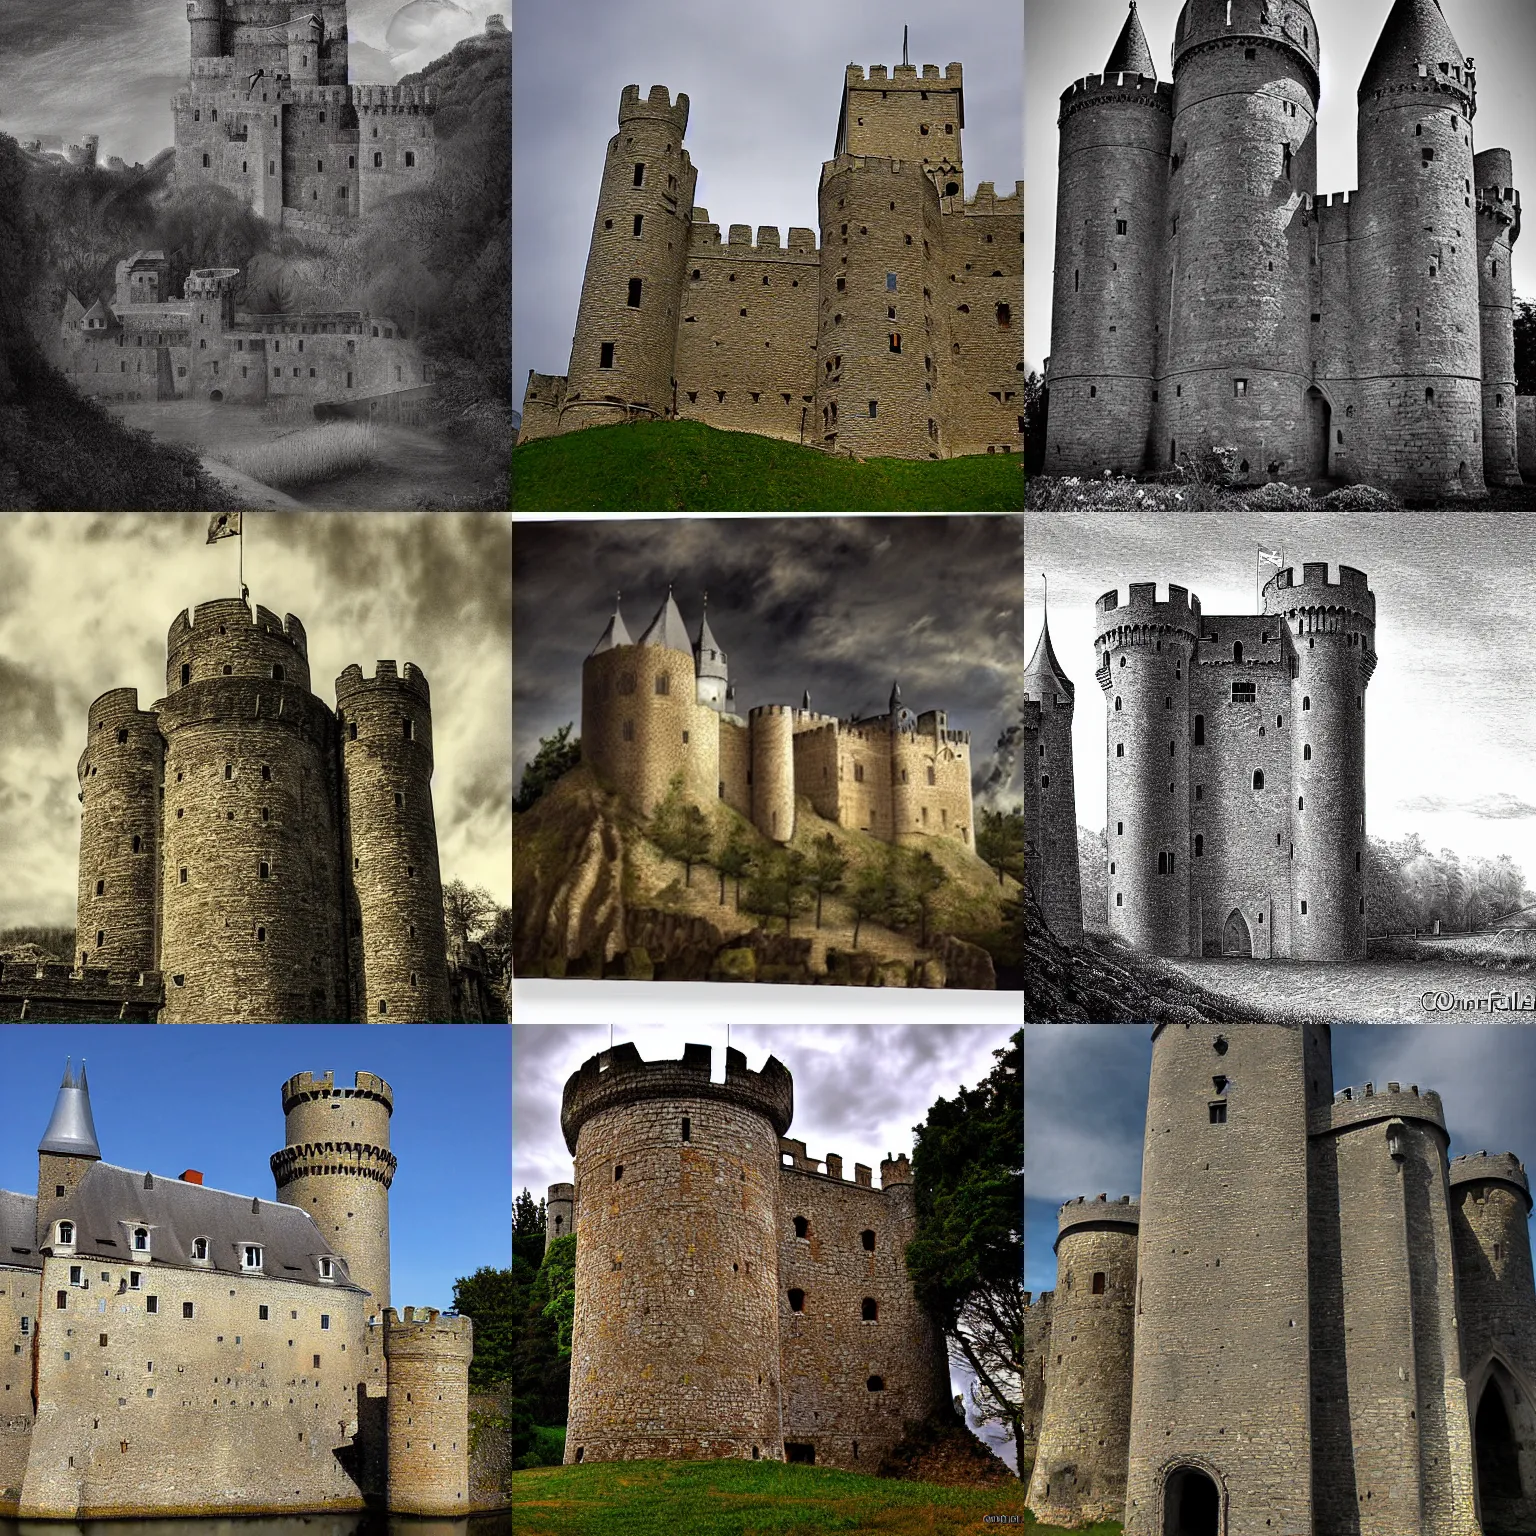 Prompt: medieval castle, by conrad felixmuller